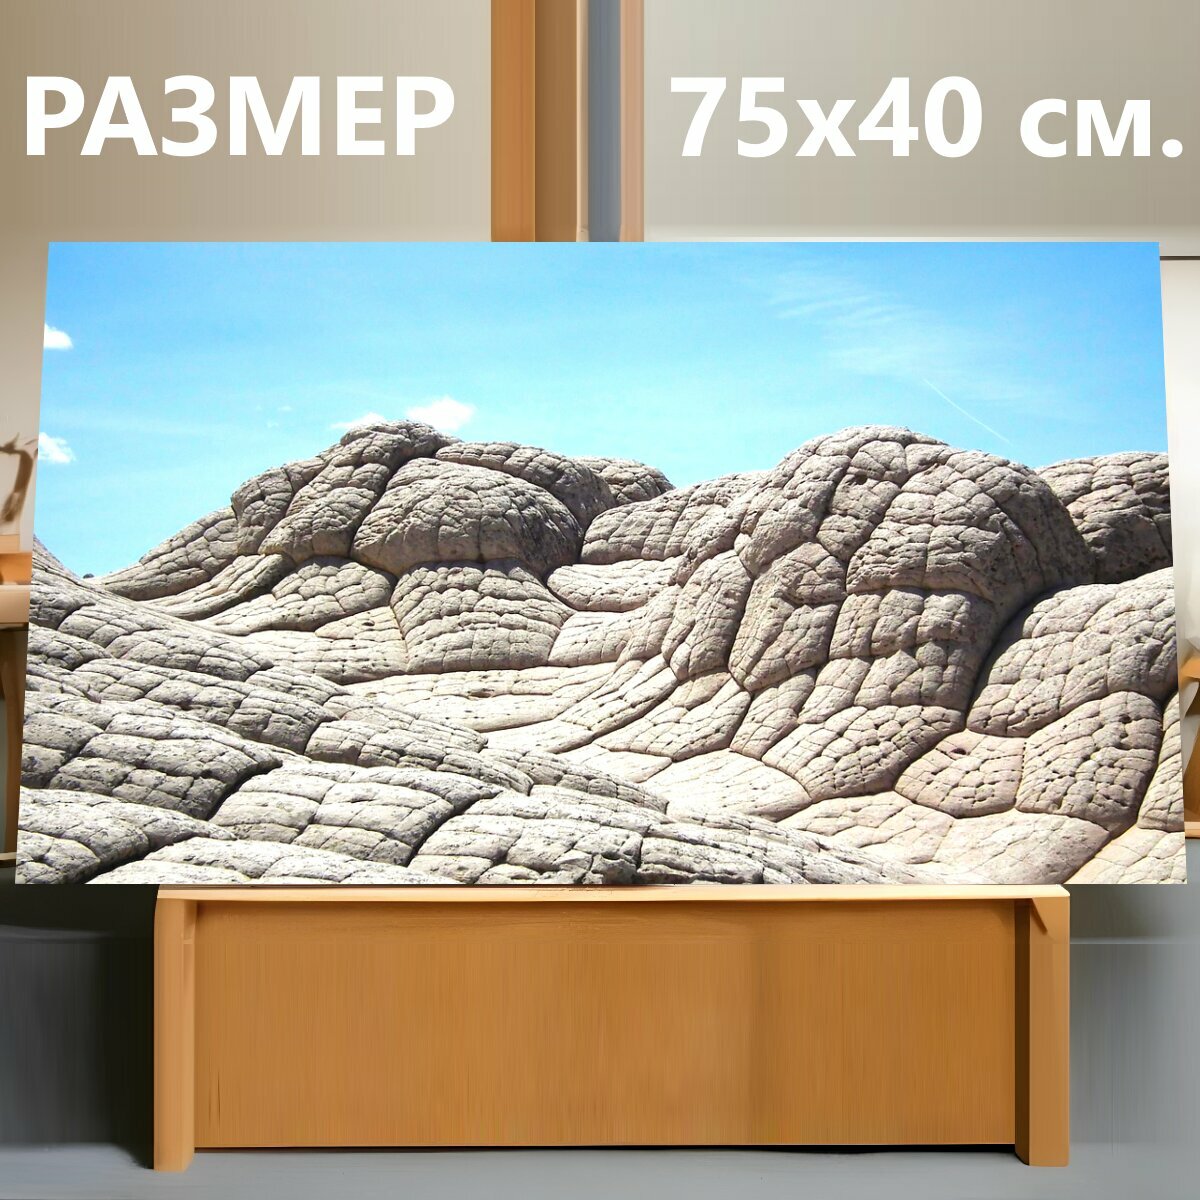 Картина на холсте "Аризона, горная порода, песчаник" на подрамнике 75х40 см. для интерьера